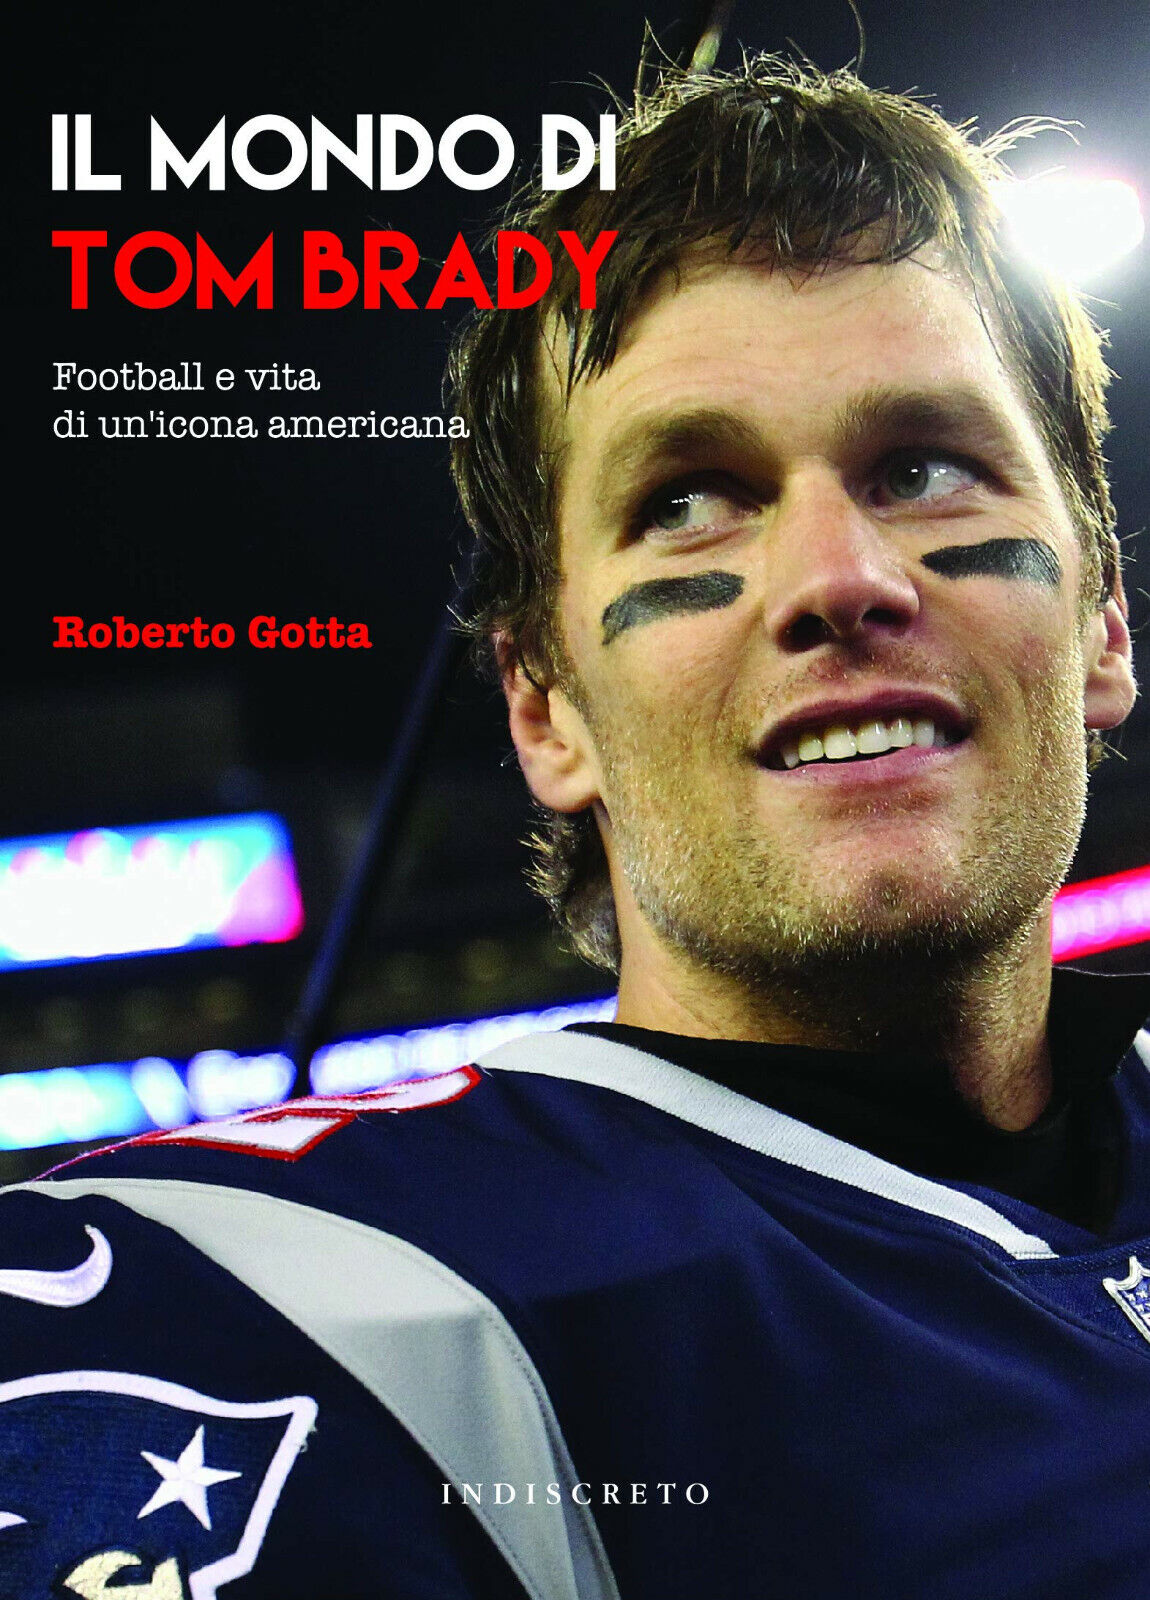 Il mondo di Tom Brady - Roberto Gotta - Indiscreto, 2019 libro usato